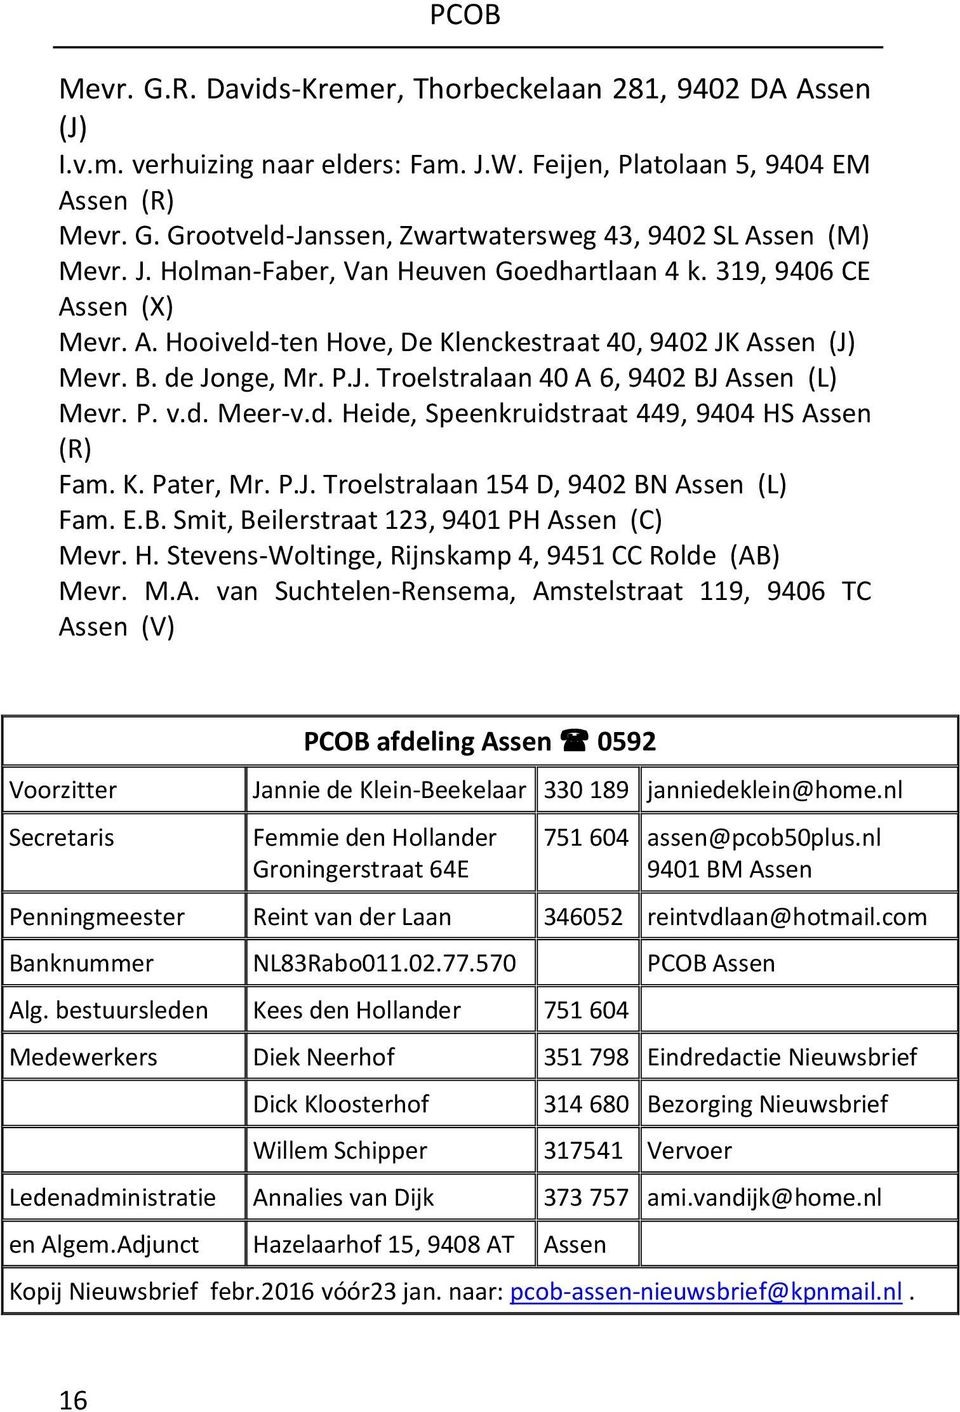 P. v.d. Meer-v.d. Heide, Speenkruidstraat 449, 9404 HS Assen (R) Fam. K. Pater, Mr. P.J. Troelstralaan 154 D, 9402 BN Assen (L) Fam. E.B. Smit, Beilerstraat 123, 9401 PH Assen (C) Mevr. H. Stevens-Woltinge, Rijnskamp 4, 9451 CC Rolde (AB) Mevr.